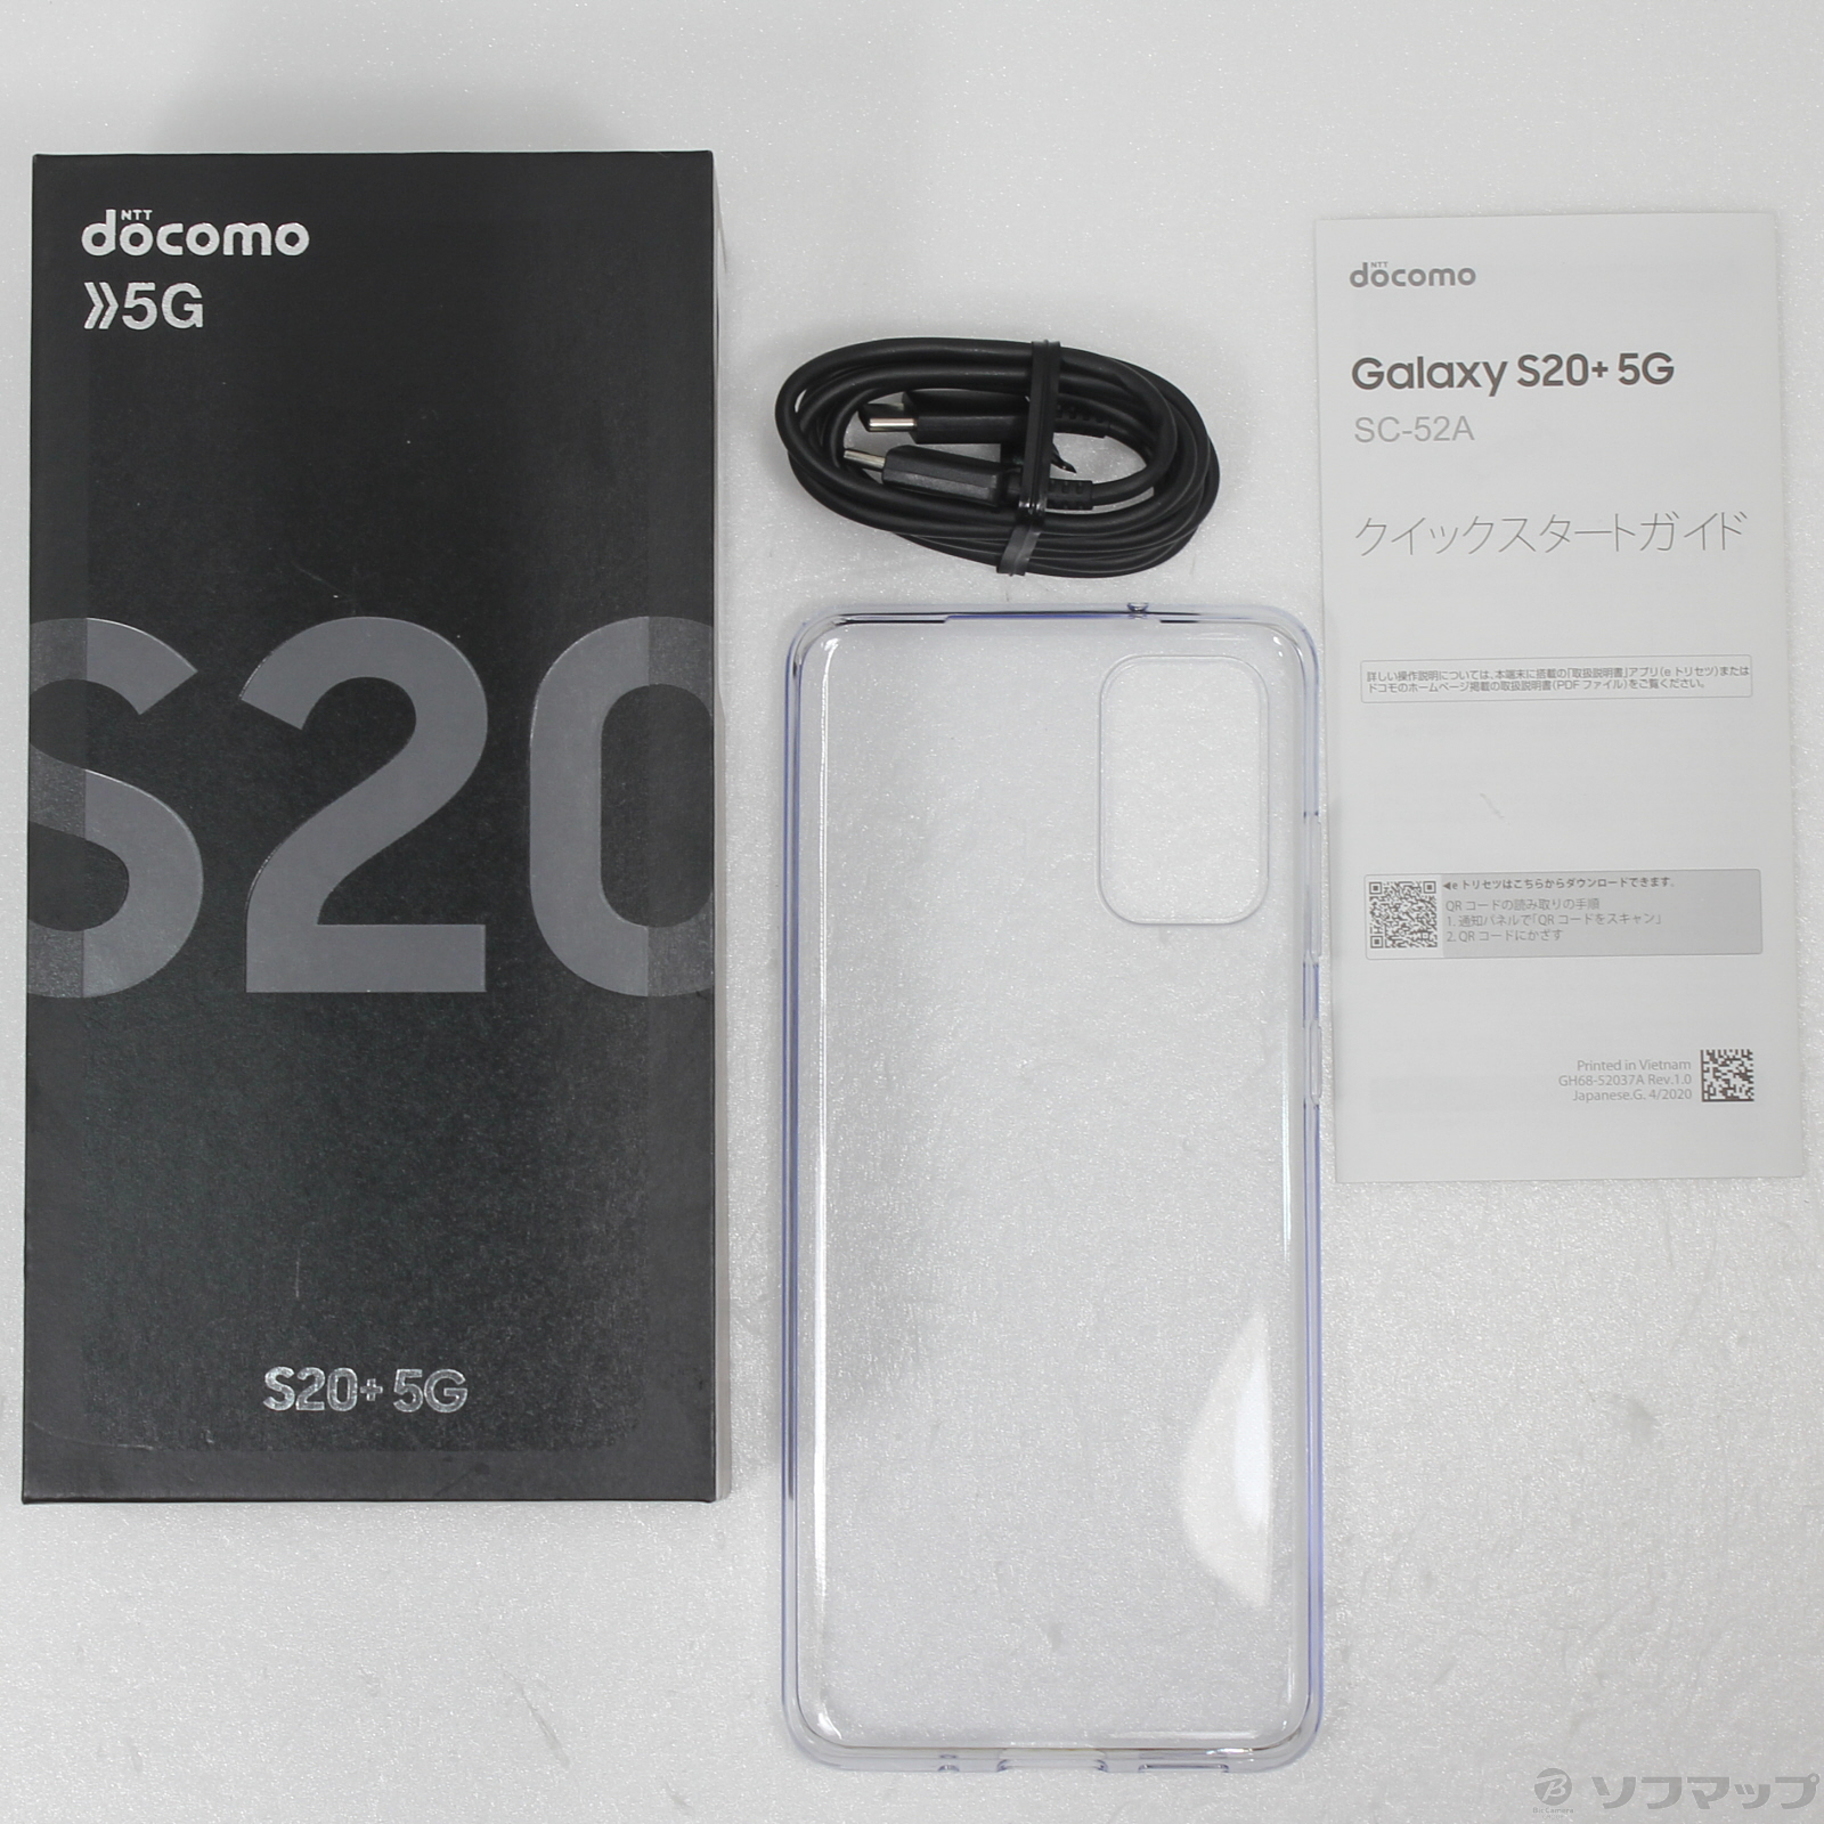 スマートフォン・携帯電話ドコモ SC-52A Galaxy S20+ 5G コスミックグレー